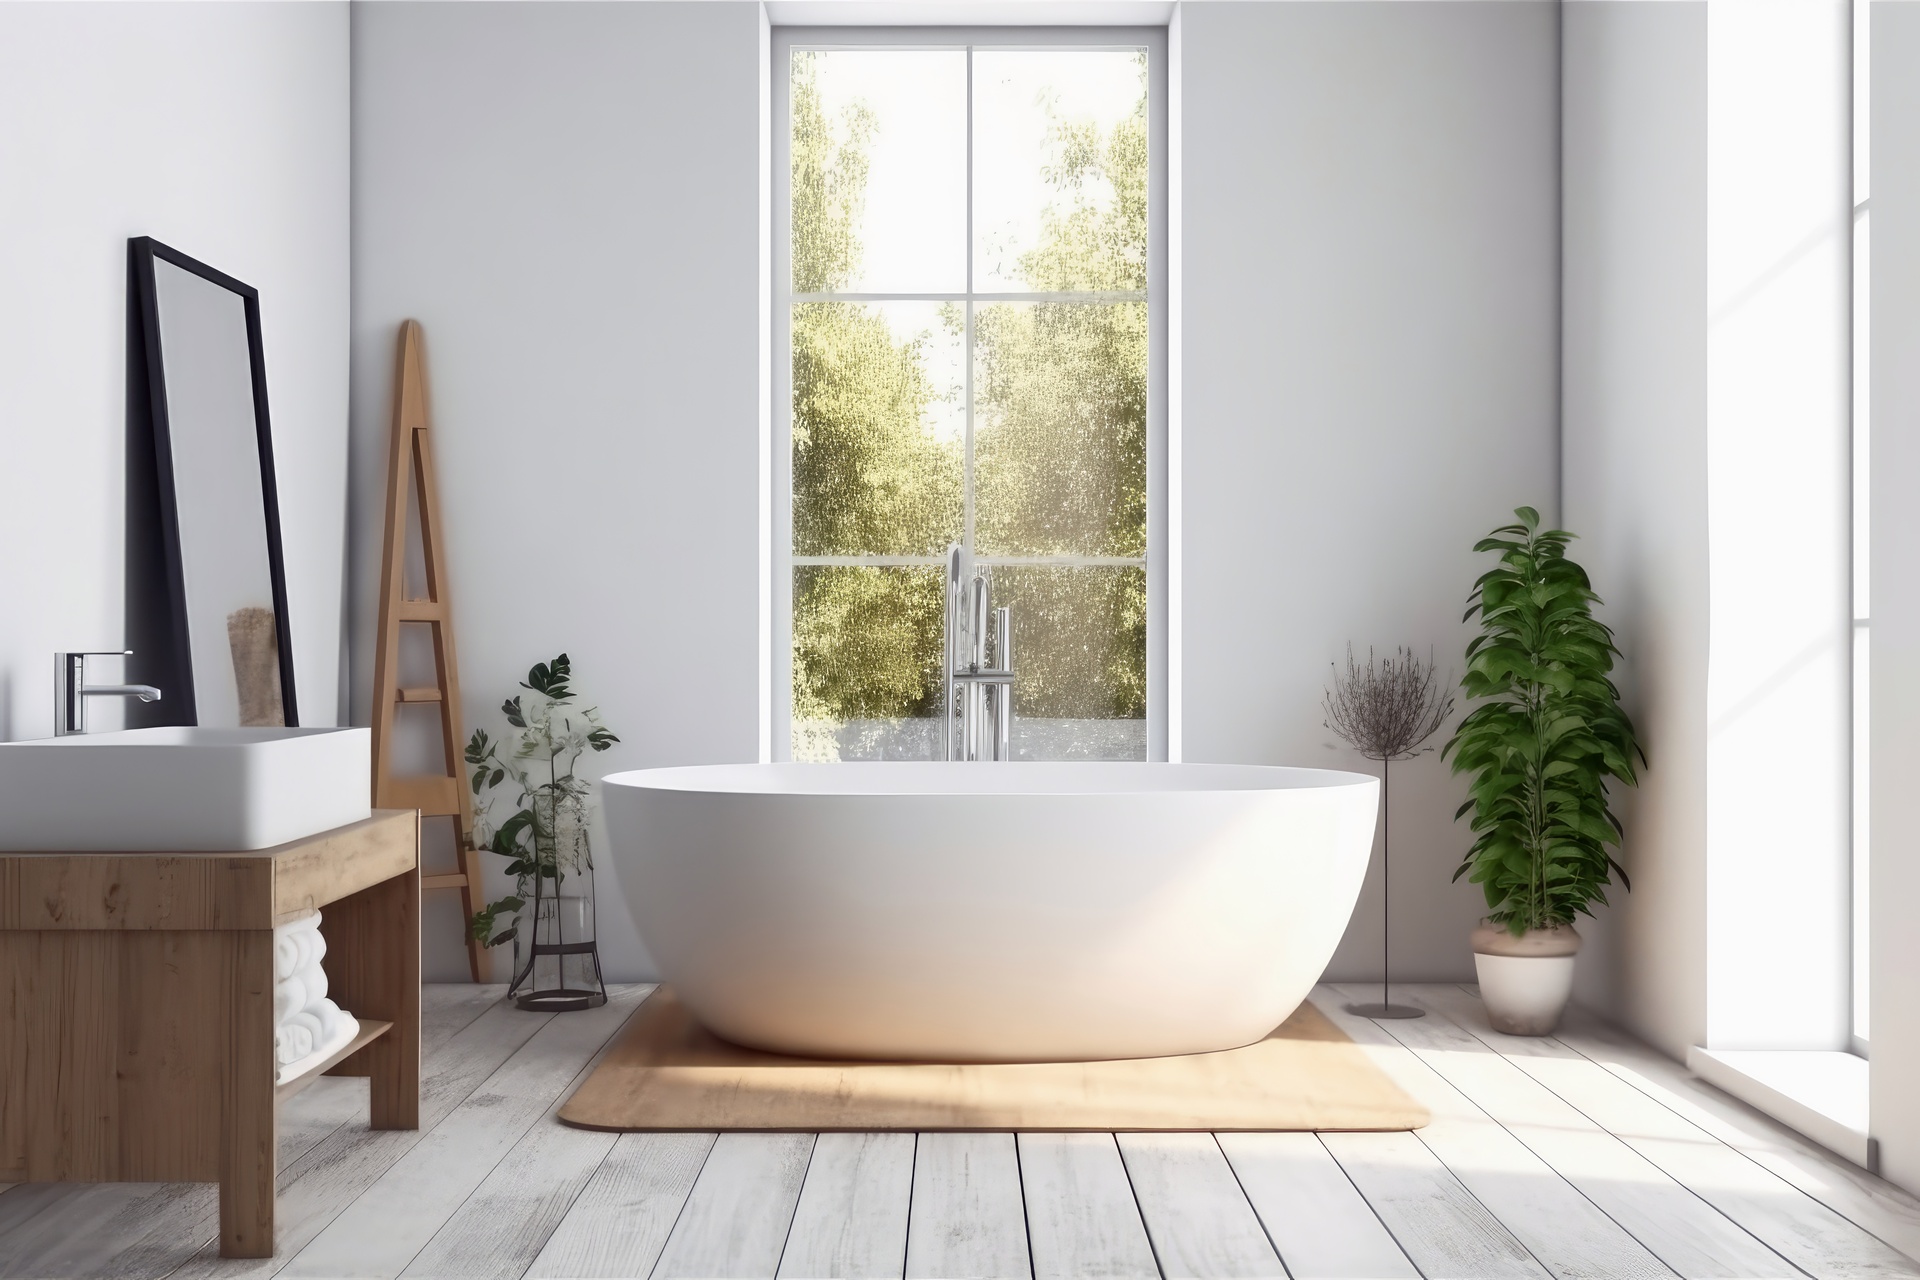 Na obrazku możemy zobaczyć elegancką białą łazienkę z subtelnie wkomponowanymi elementami drewna. Połączenie bieli i drewna nadaje wnętrzu harmonijnego i przyjemnego charakteru. Drewniane akcenty dodają ciepła i naturalnego piękna, tworząc przytulną atmosferę w łazience